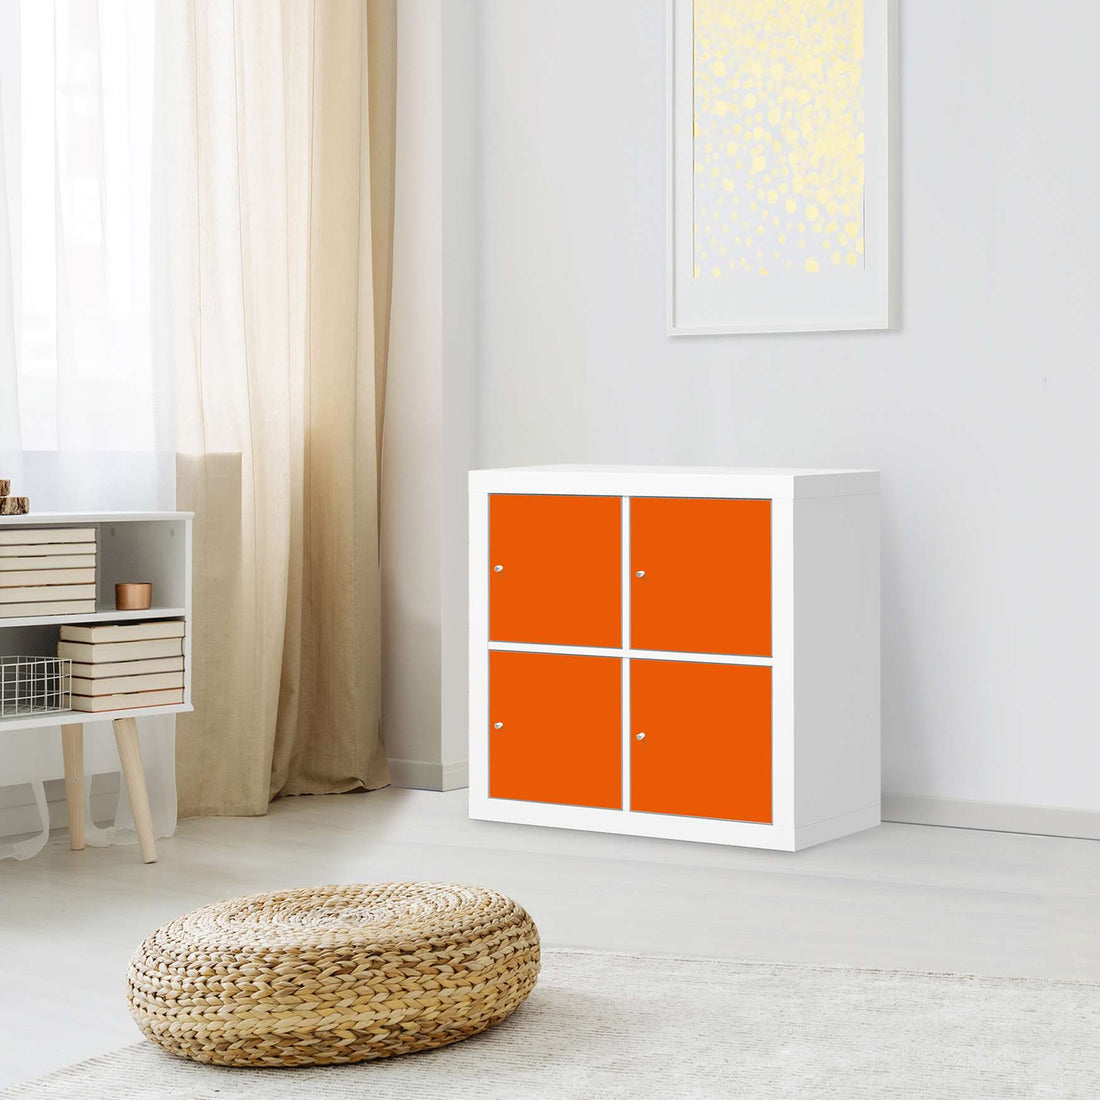 Möbelfolie Orange Dark - IKEA Expedit Regal 4 Türen - Wohnzimmer